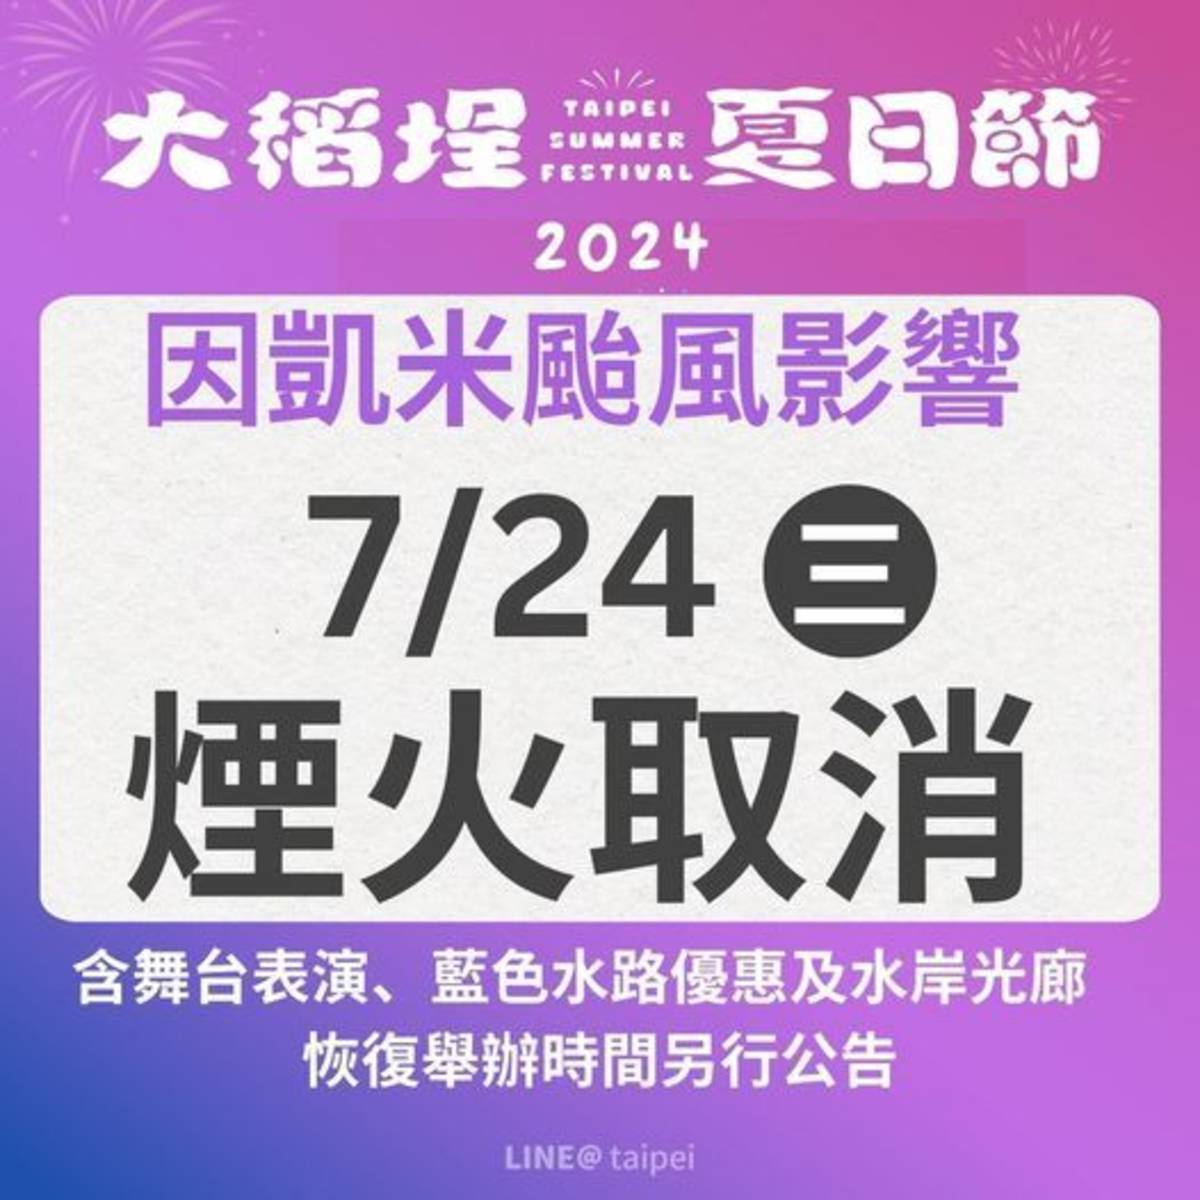 颱風凱米來襲 「大稻埕夏日節」7/23起活動暫停、7/24取消煙火施放